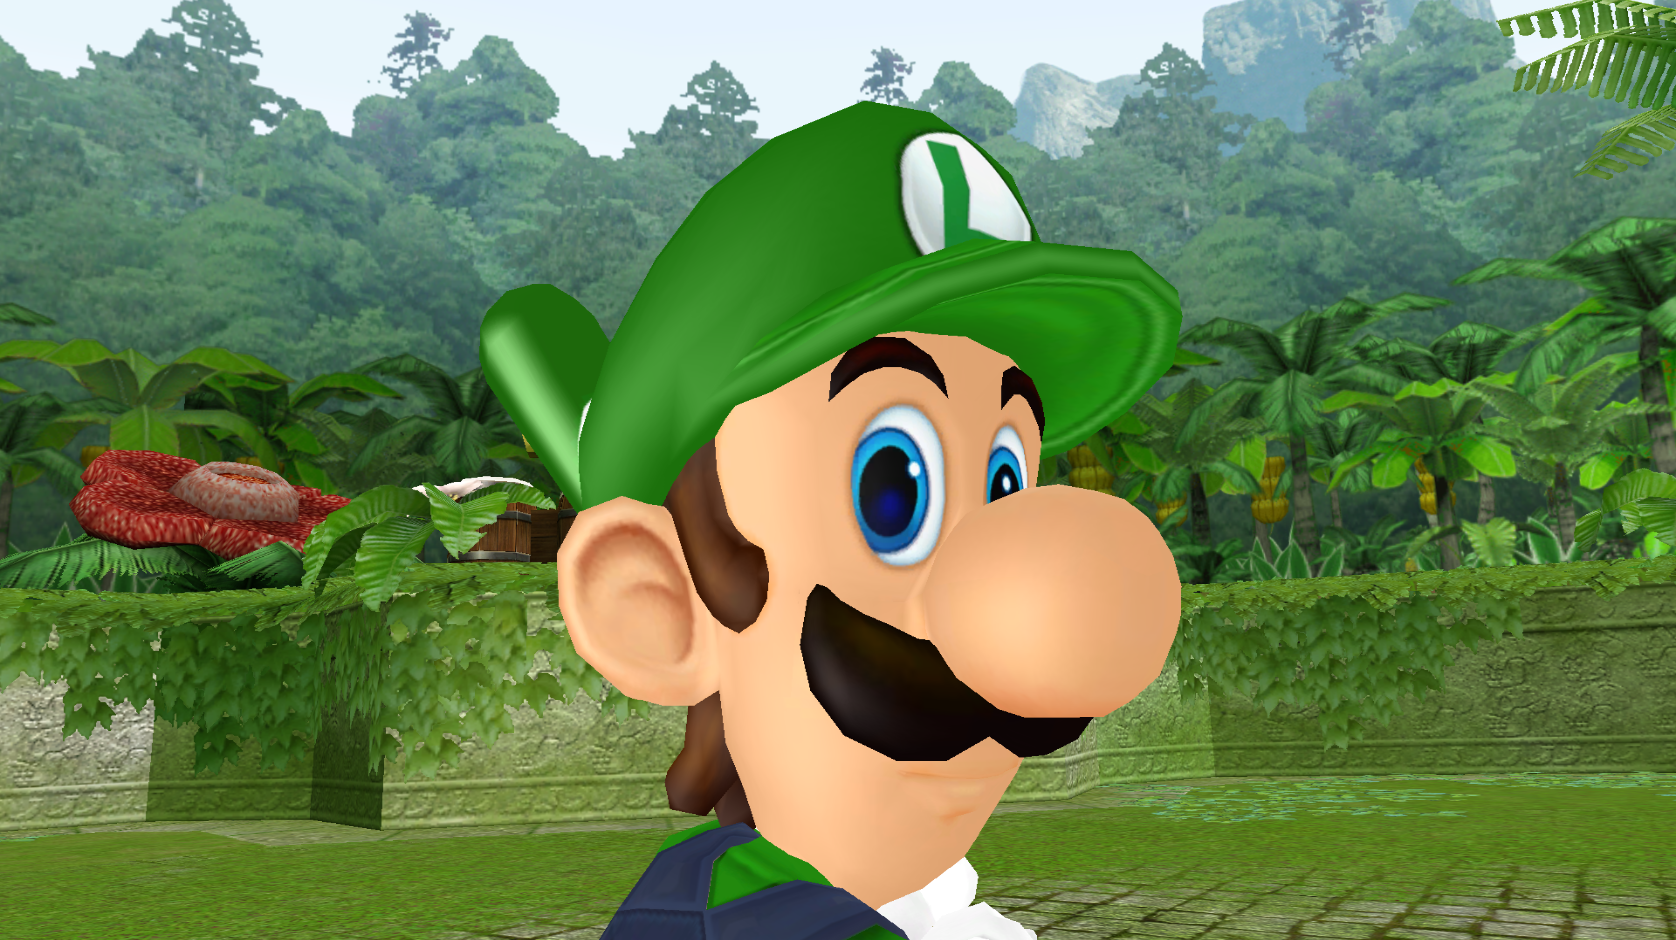 Luigi's eye.